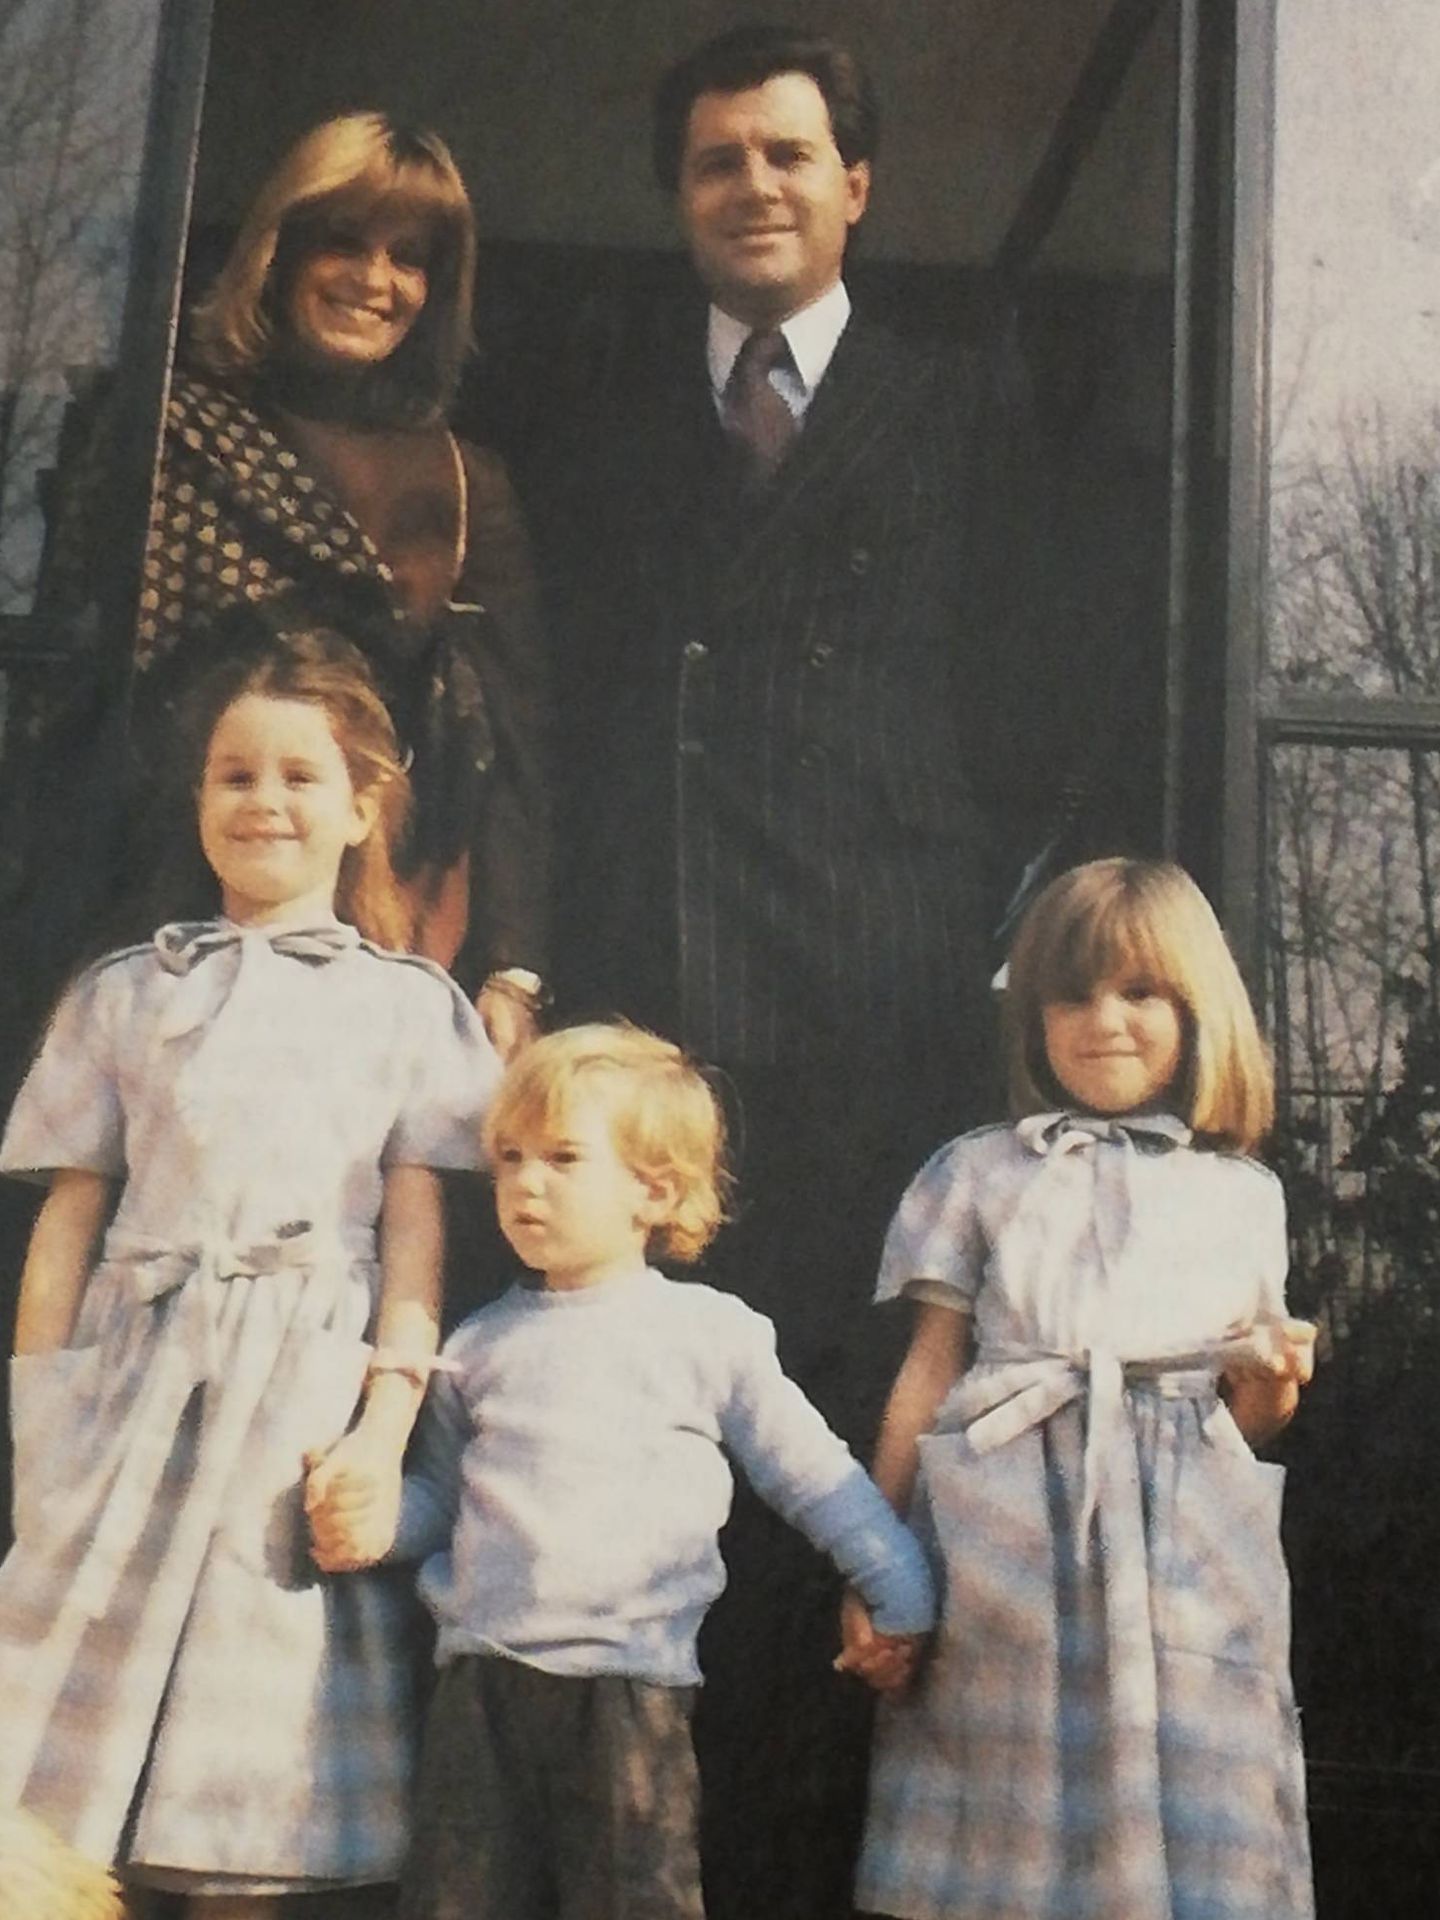 Beatrice con su familia en una imagen de archivo. (Paloma Barrientos)